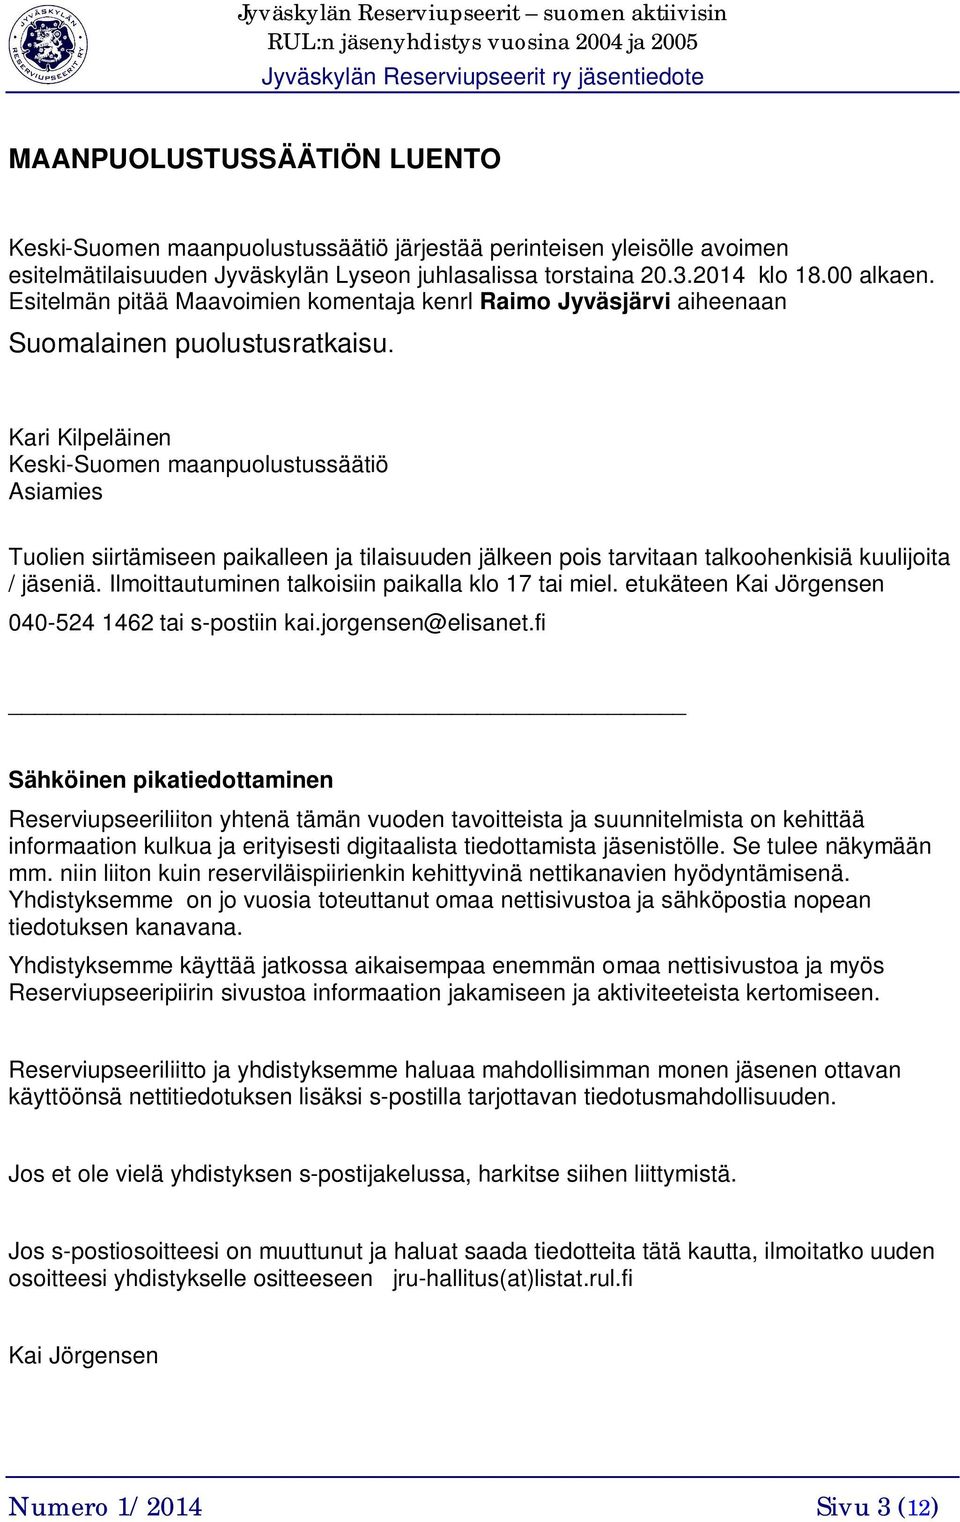 Kari Kilpeläinen Keski-Suomen maanpuolustussäätiö Asiamies Tuolien siirtämiseen paikalleen ja tilaisuuden jälkeen pois tarvitaan talkoohenkisiä kuulijoita / jäseniä.